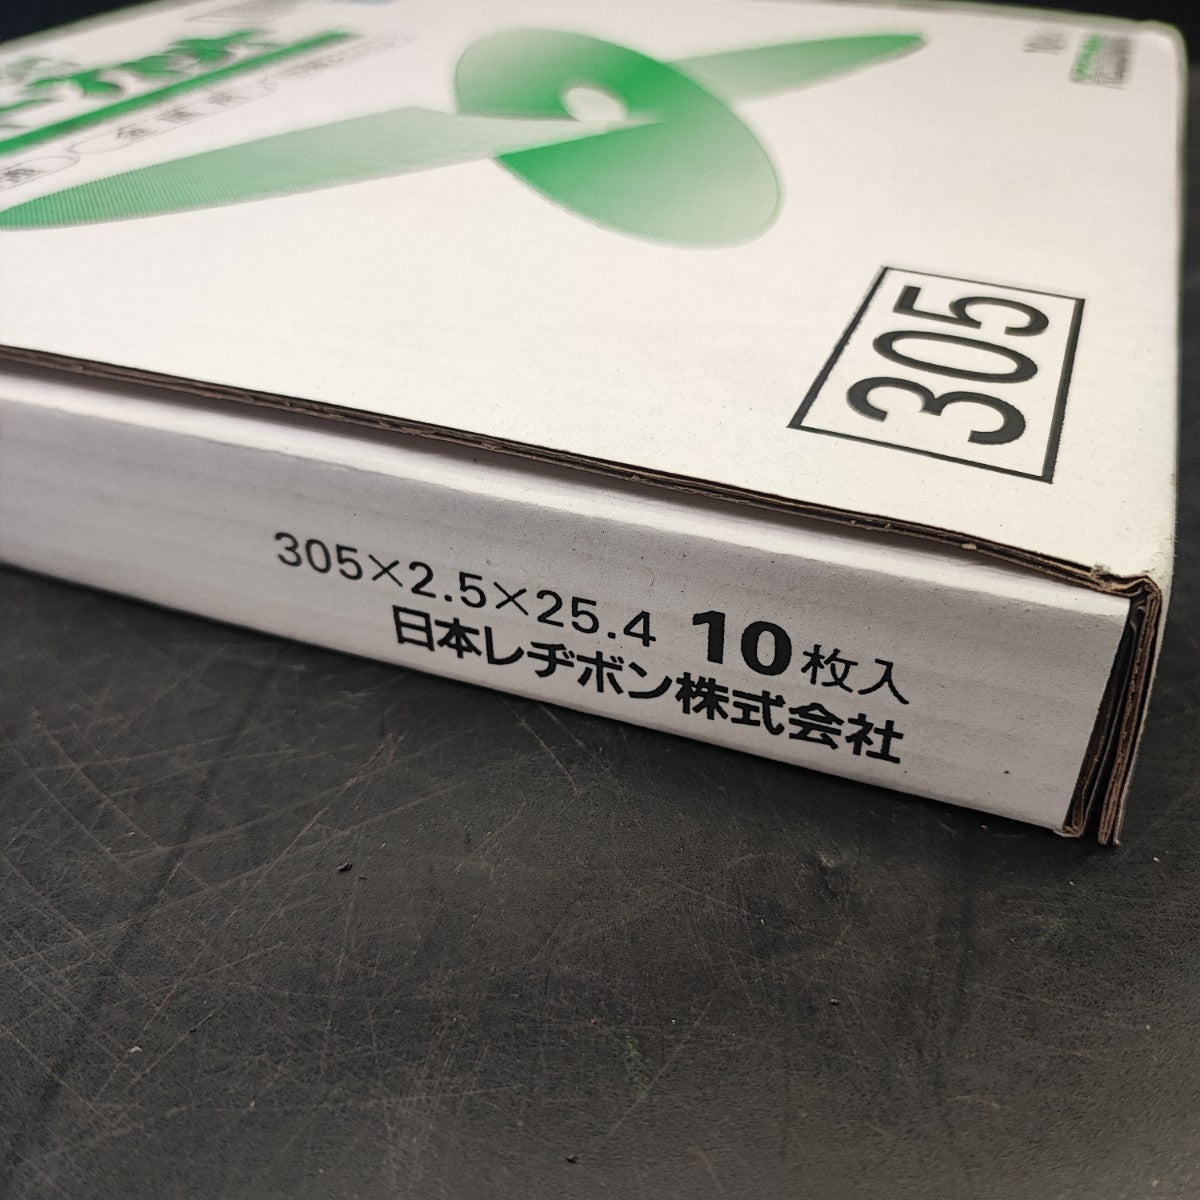 レヂボン 切断砥石 スーパーカットRSC 305mm【桶川店】 | アクトツール